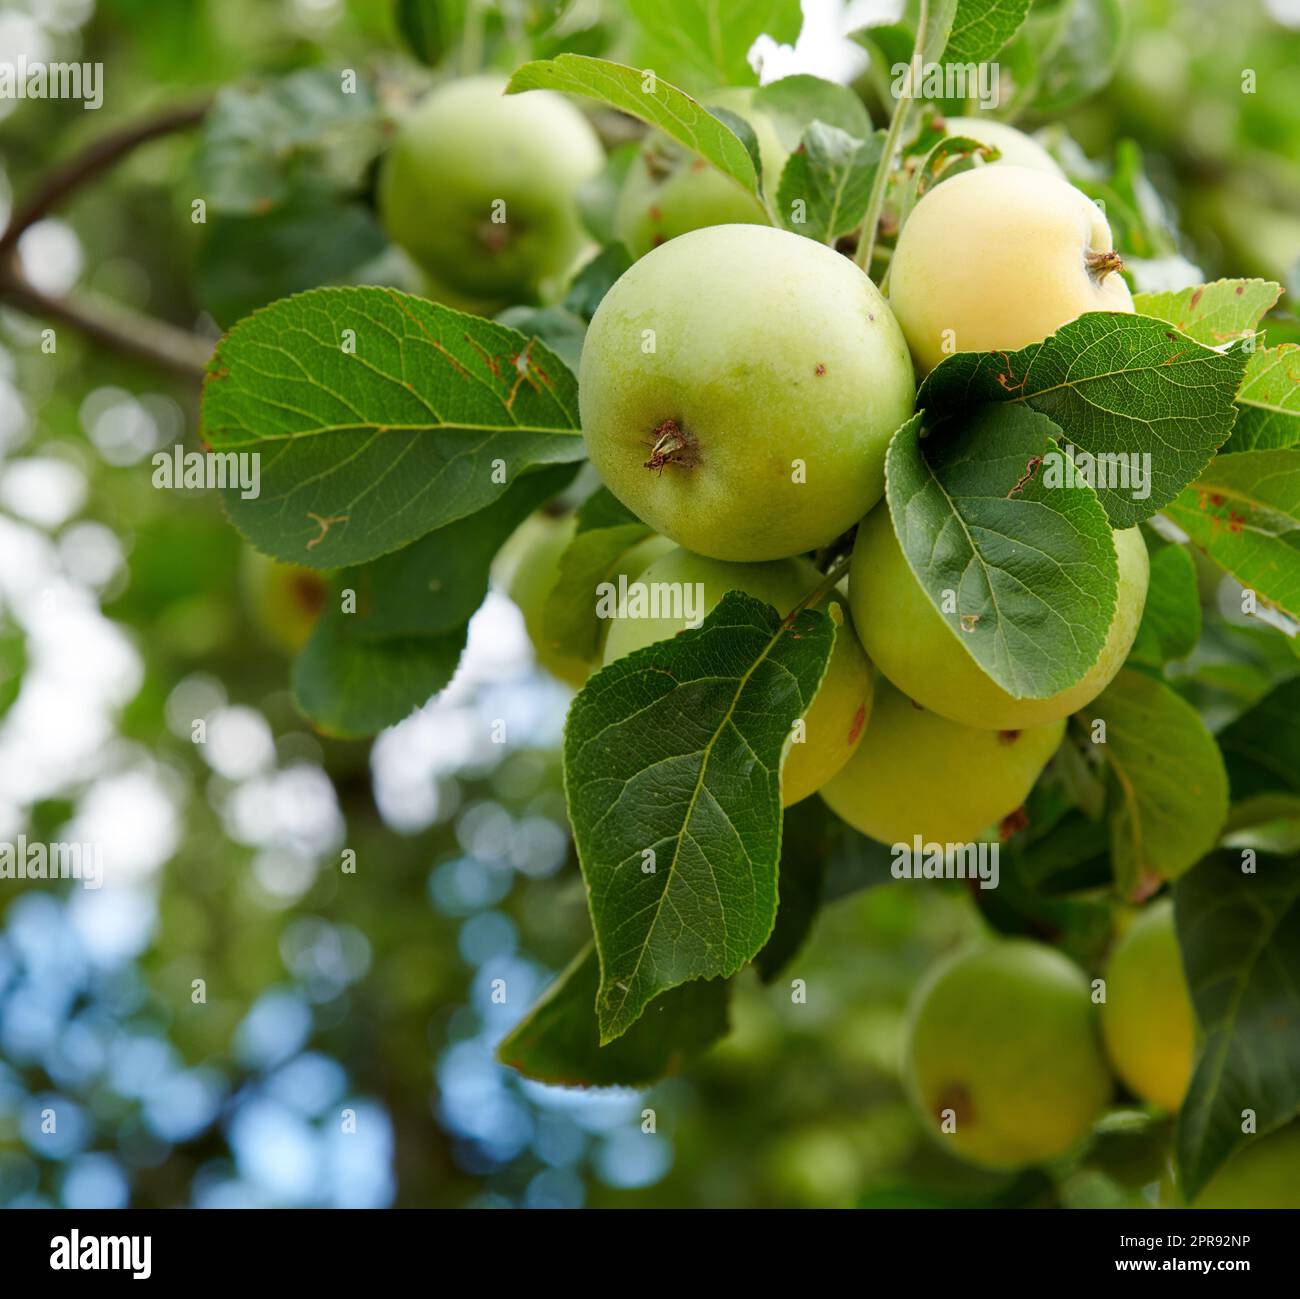 Des pommes dans mon jardin. Pommes vertes mûres fraîches poussant sur l'arbre à l'extérieur. Cadre paisible et paisible de la nature lors d'une journée ensoleillée d'été. Plante la tige de fruit avec des feuilles vertes autour des pommes sur la ferme. Banque D'Images